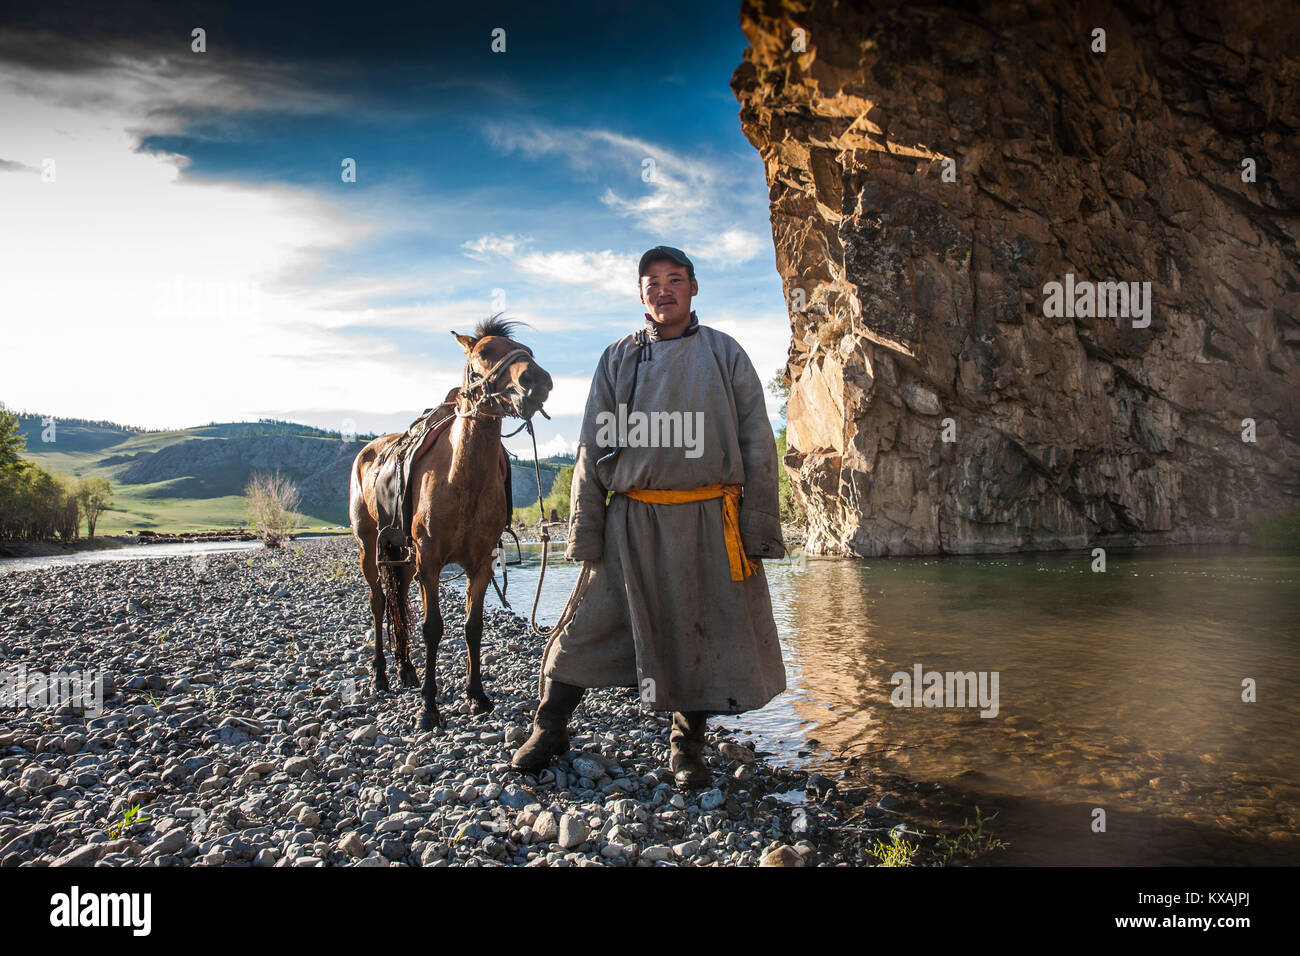 Jinete mongol en Río, Bunkhan Tamir, Bulgan, Mongolia Foto de stock